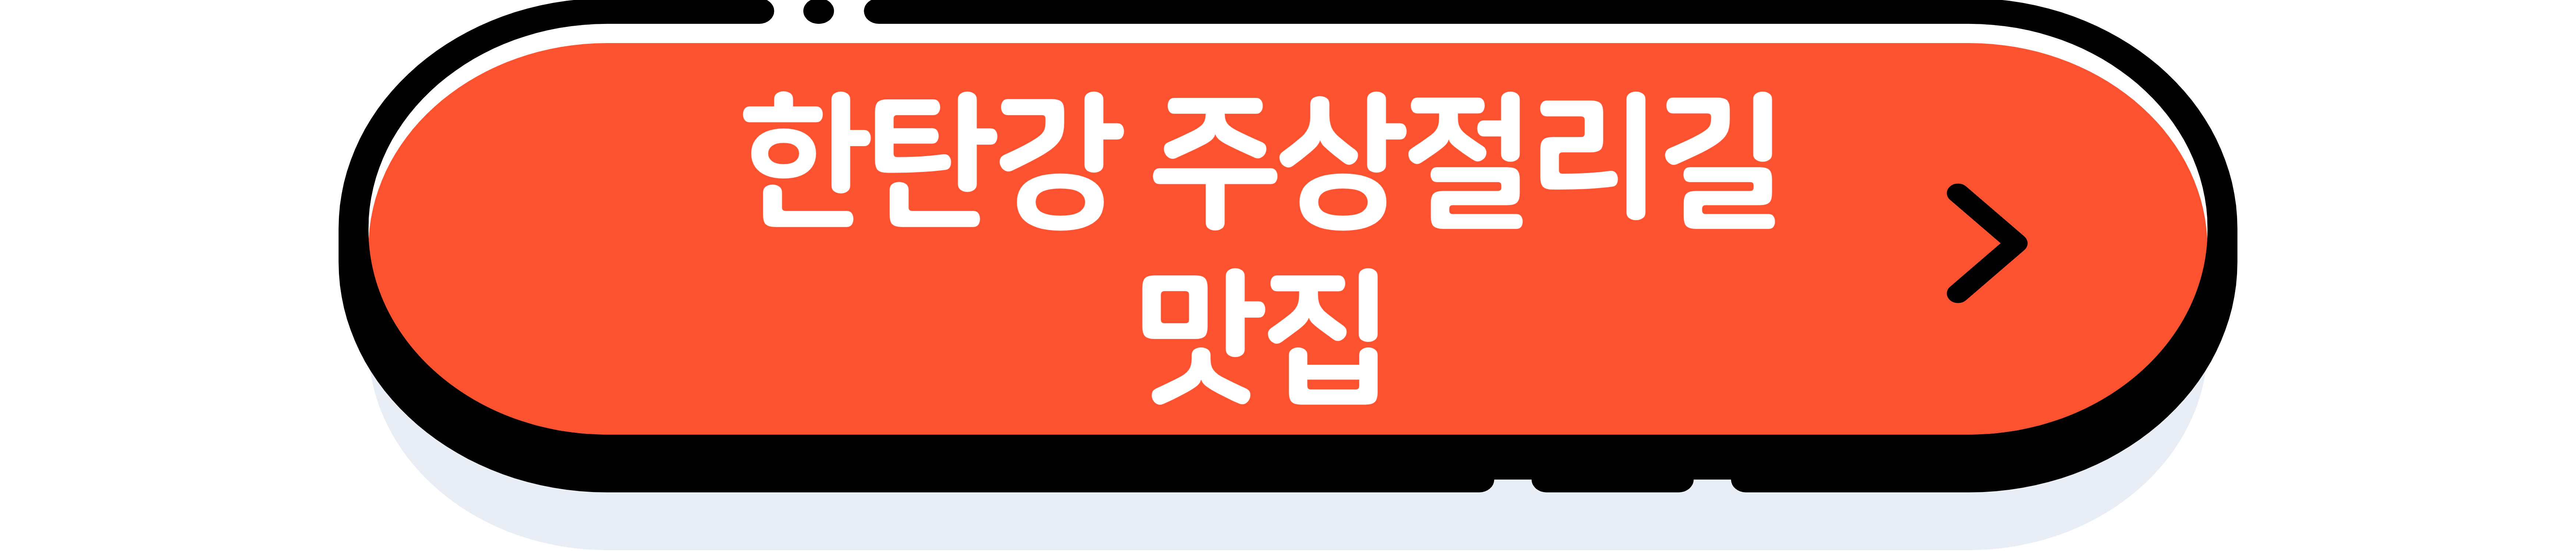 한탄강 주상절리길 잔도길 정보&#44; 꿀팁 공유